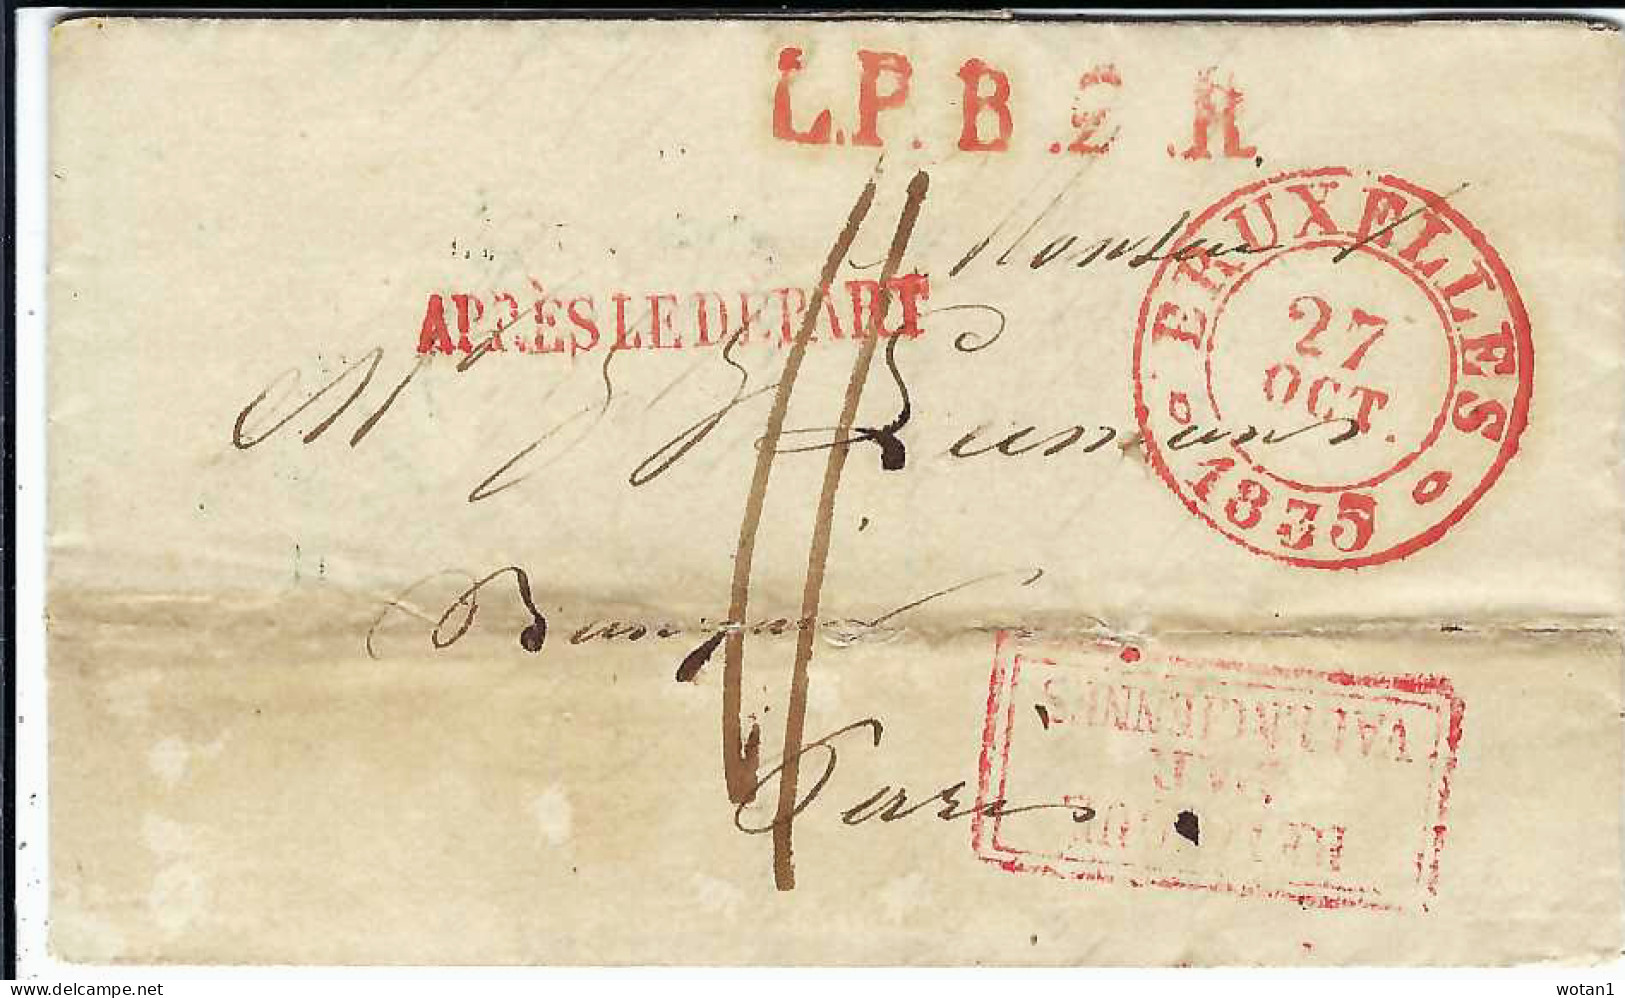 Lettre De BRUXELLES Du 27 OCT 1835 à PARIS + Griffes "L.P.B..R" + "APRES LE DEPART" + "BELGIQUE PAR VALENCIENNES" - 1830-1849 (Unabhängiges Belgien)